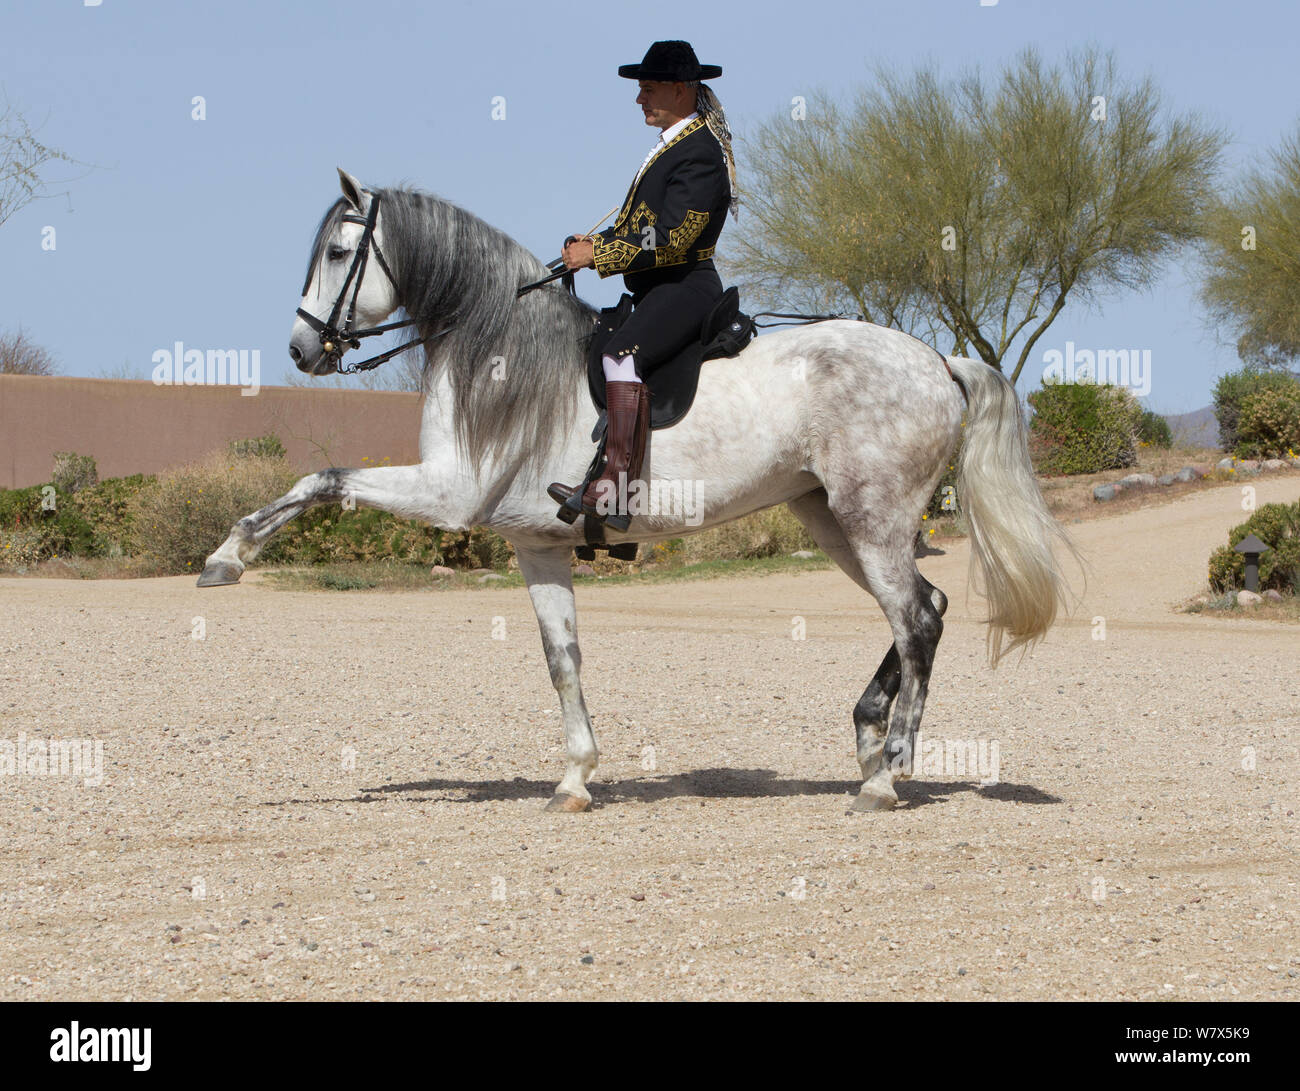 Jinete Manuel Trigo en traje tradicional española la realización de doma de caballo, gris Mare Andaluza, Phoenix, Arizona, EE.UU. Febrero de 2012. Modelo liberado Foto de stock